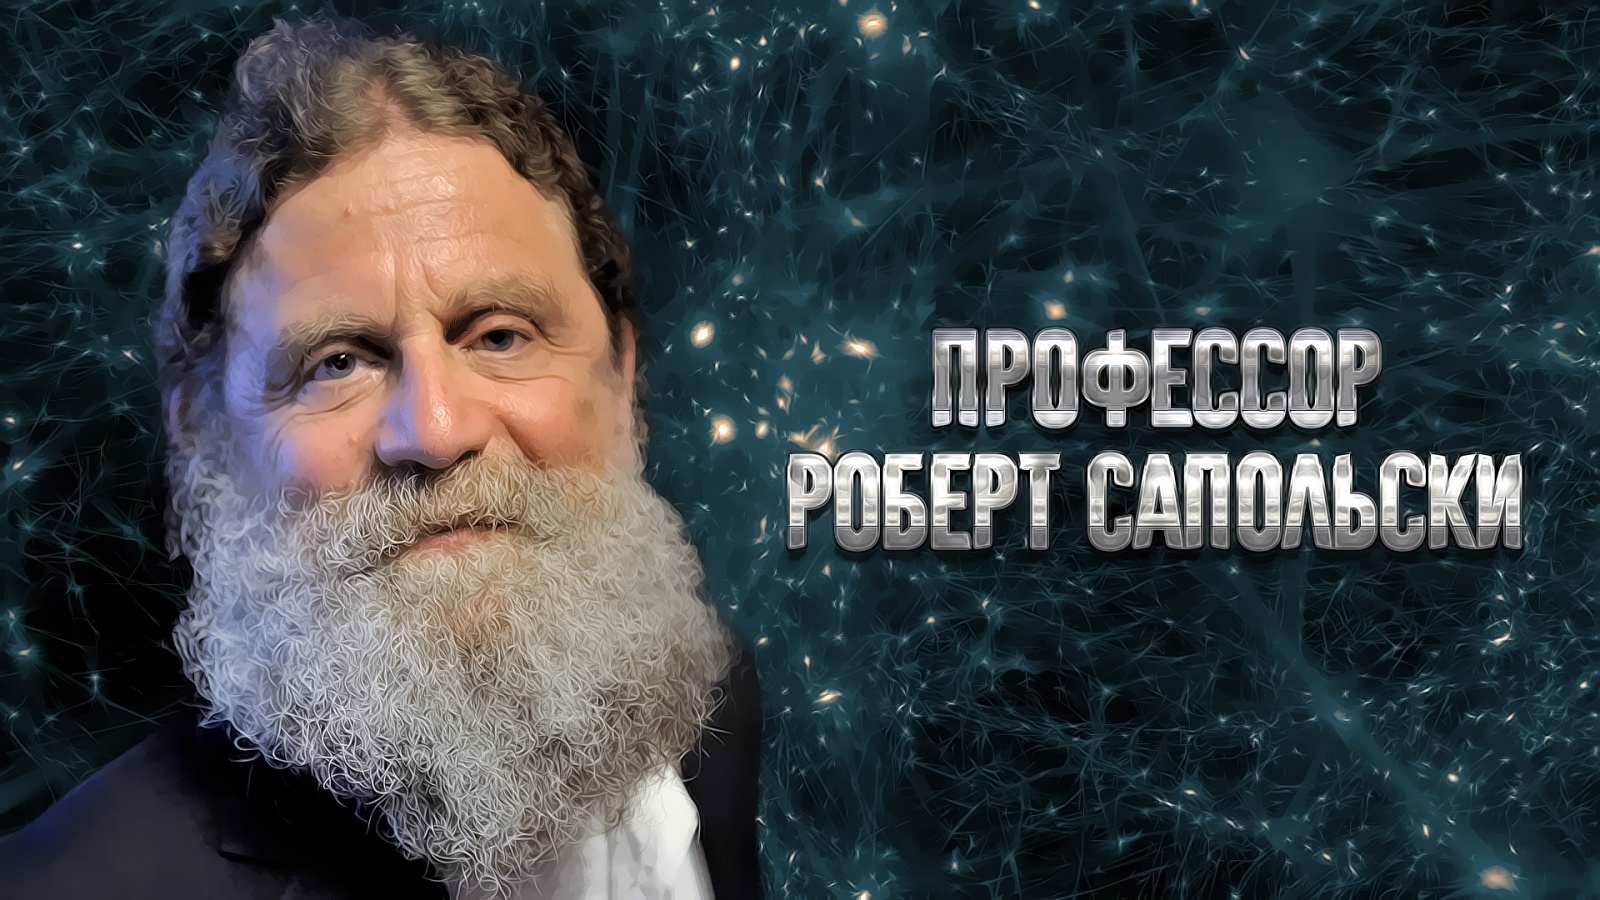 Интервью с Робертом Сапольски - 1